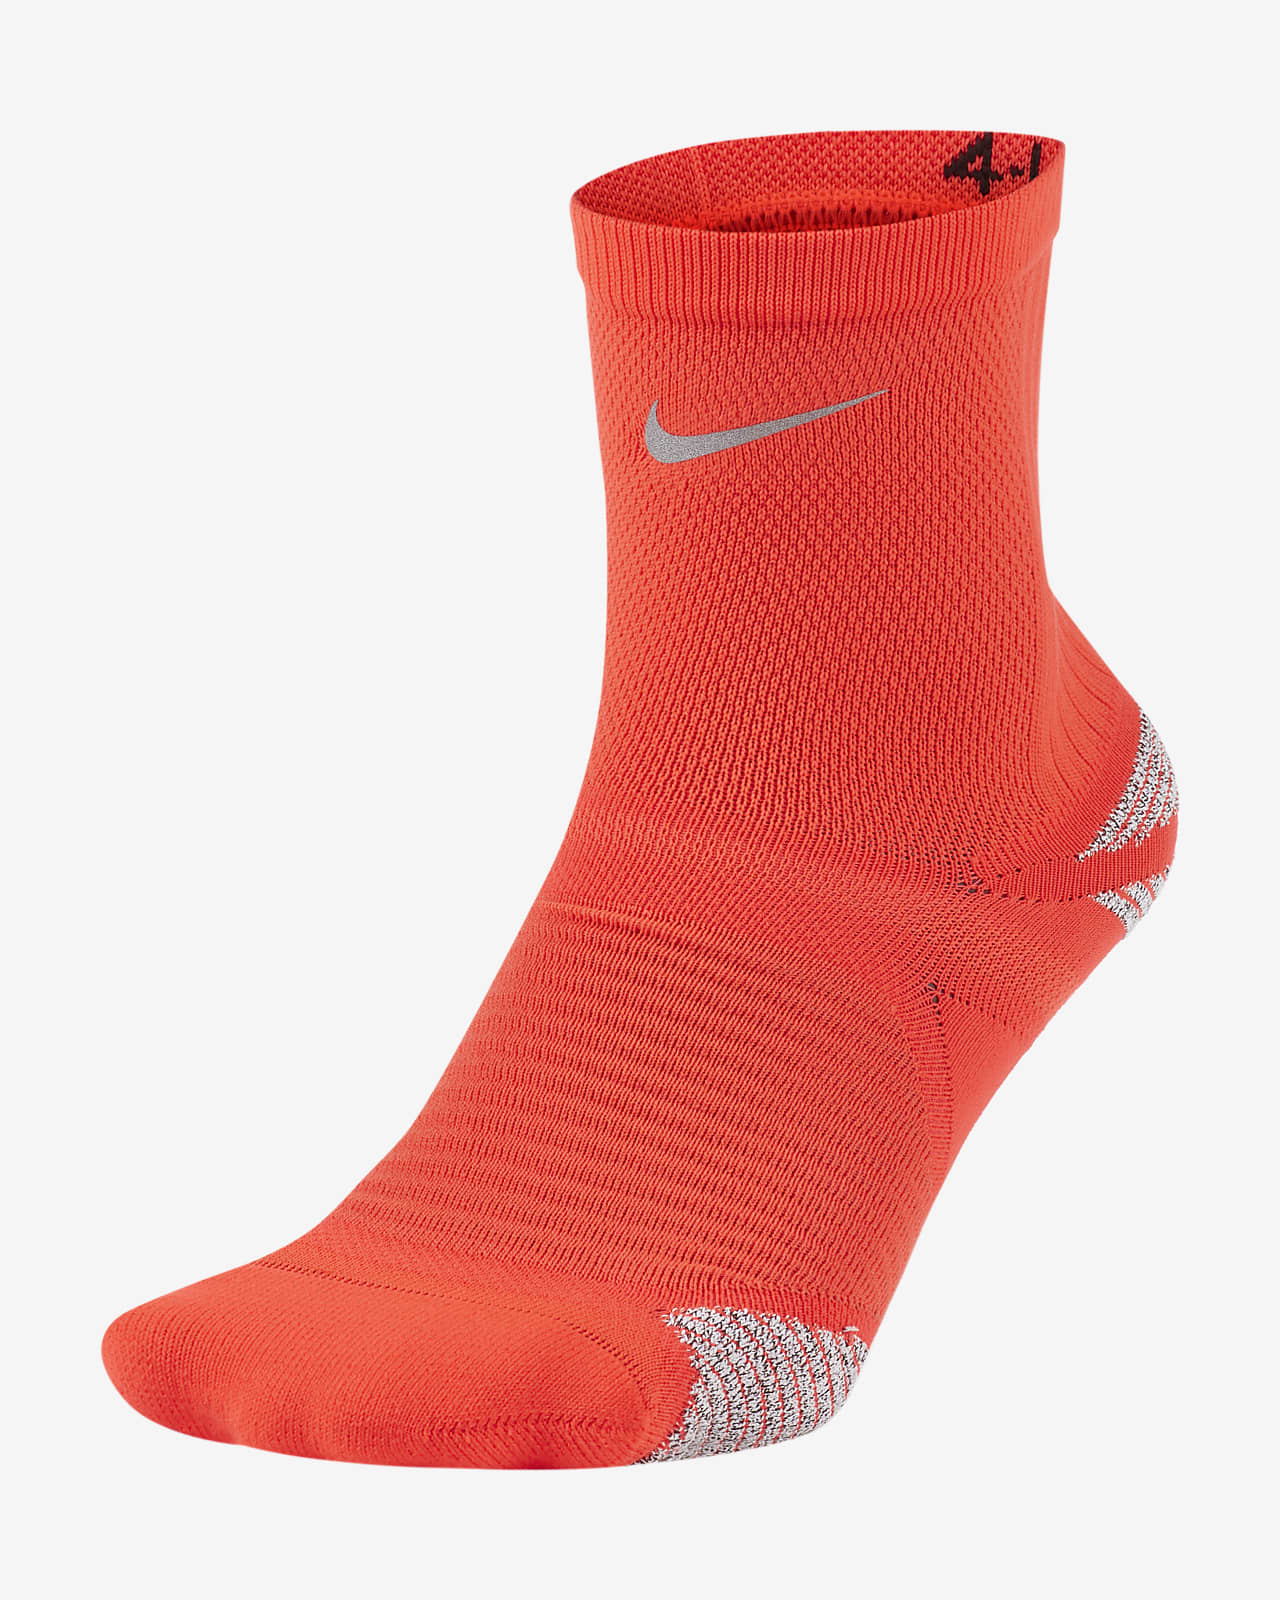 Nike Racing Ankle Socks. Nike JP